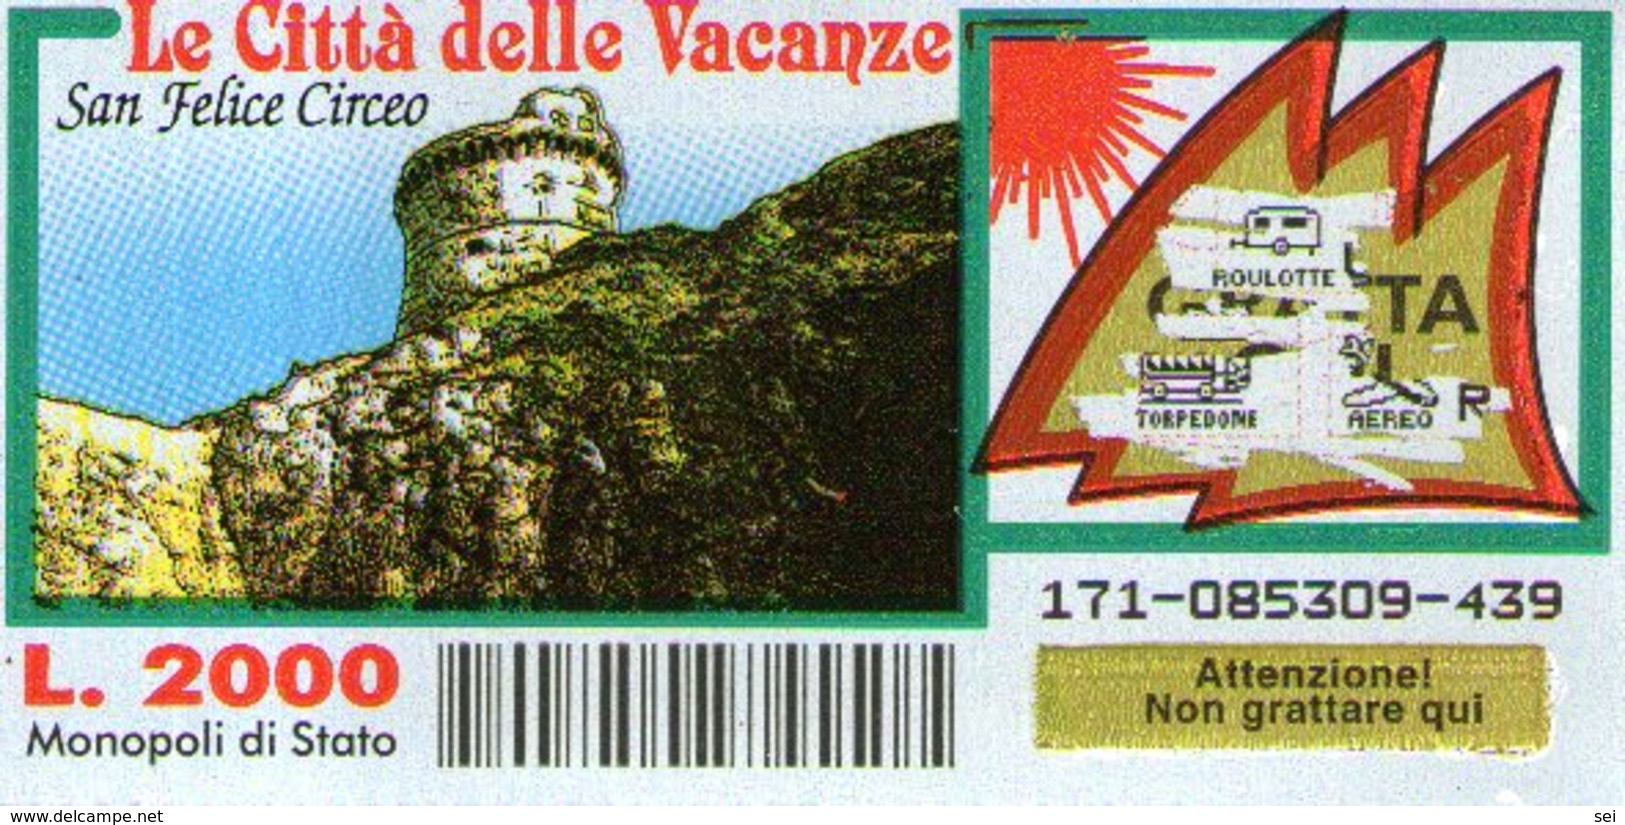 B 2374 - Gratta E Vinci, Le Città Delle Vacanze, San Felice Circeo - Biglietti Della Lotteria